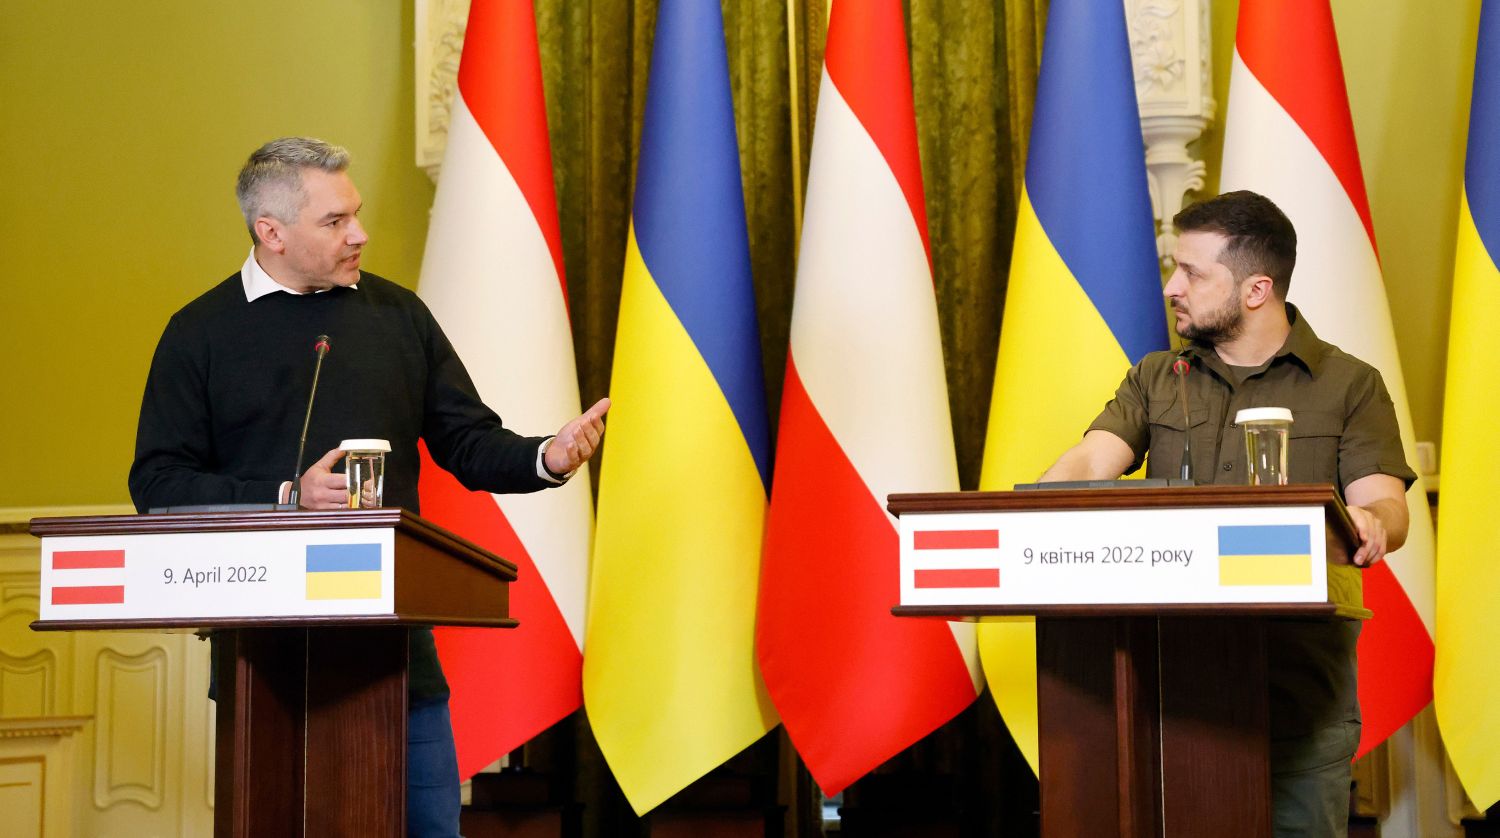 Bundeskanzler Karl Nehammer und Präsident Wolodymyr Selenksyi in Kiew: Ukraine braucht Unterstützung. Foto: Bka, Dragan Tatic